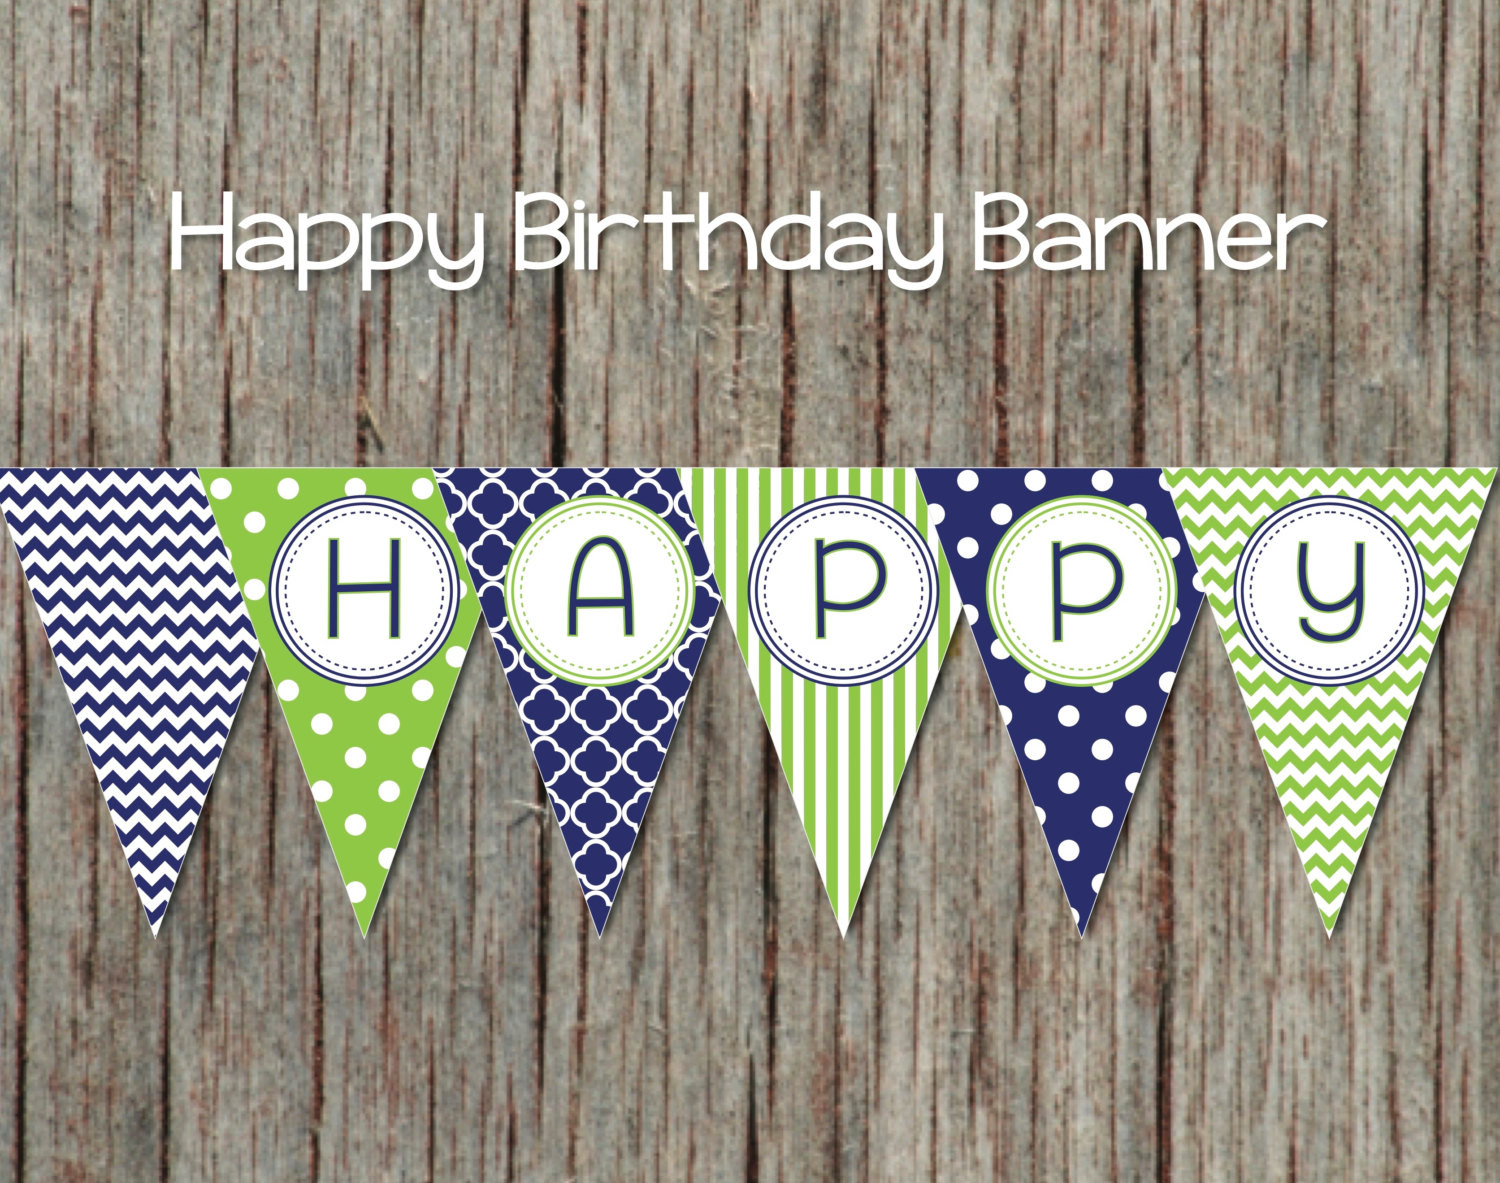 Best ideas about DIY Happy Birthday Banner
. Save or Pin Printable Birthday Banner diy Happy Now.